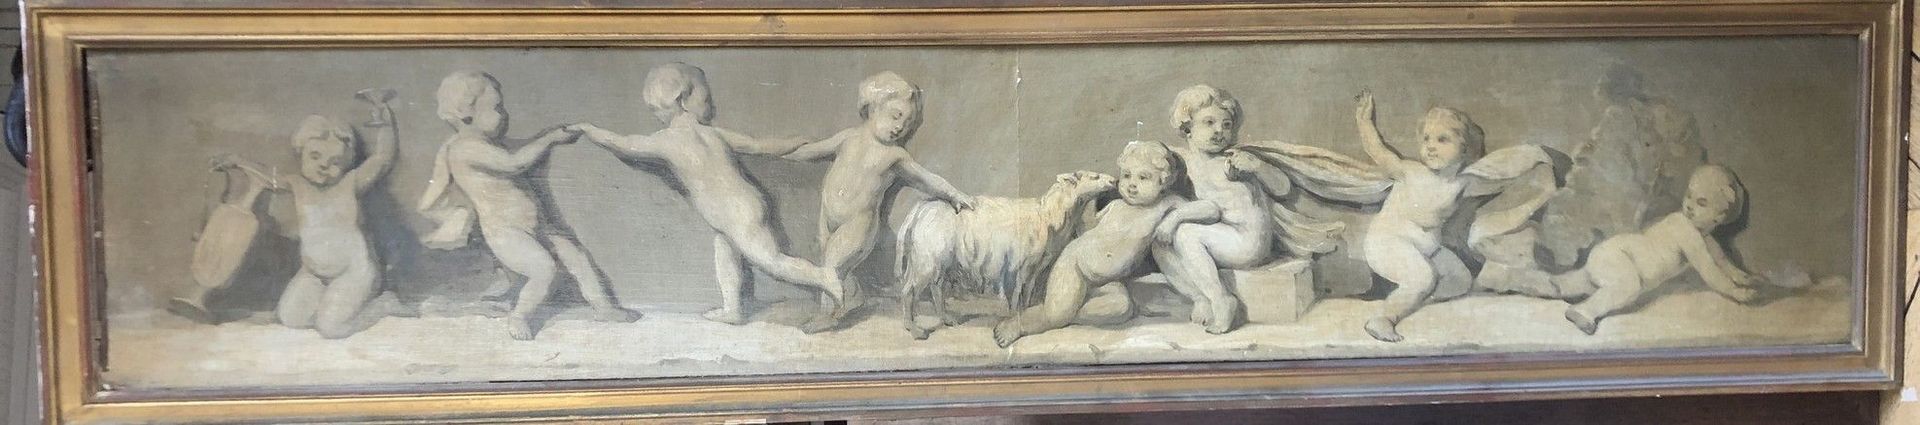 Null 
风格为Piat-Joseph Sauvage（1744-1818），19世纪末。




仿浮雕的灰彩画中的几个普蒂。




布面油画。




&hellip;